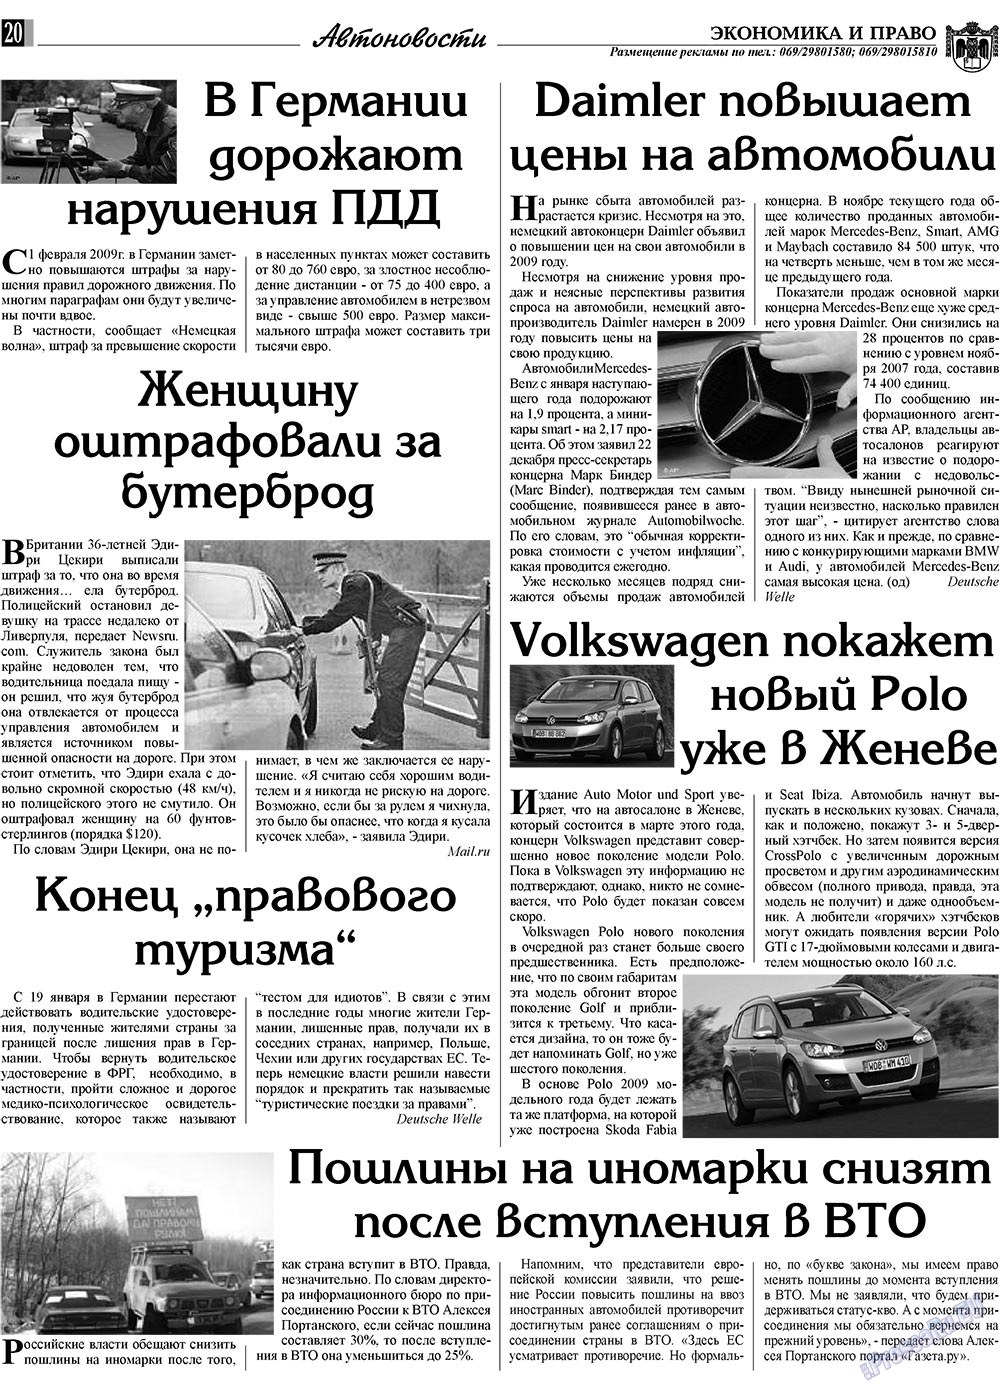 Экономика и право, газета. 2009 №2 стр.20